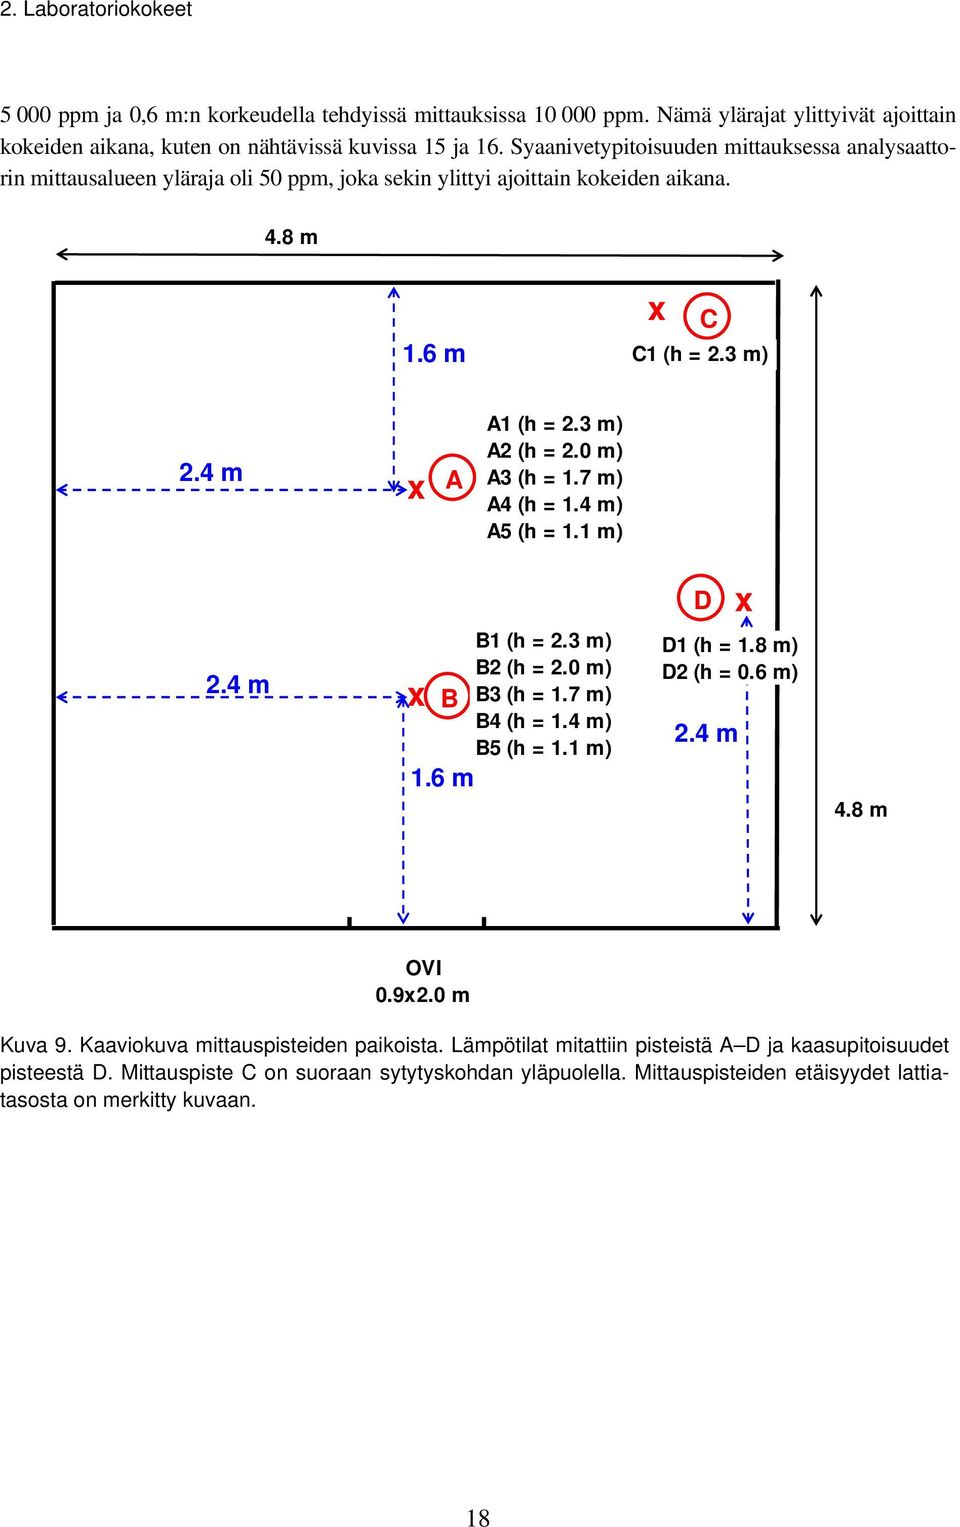 m) A3 (h = 1.7 m) A4 (h = 1.4 m) A5 (h = 1.1 m) D x 2.4 m x B 1.6 m B1 (h = 2.3 m) B2 (h = 2. m) B3 (h = 1.7 m) B4 (h = 1.4 m) B5 (h = 1.1 m) D1 (h = 1.8 m) D2 (h =.6 m) 2.4 m 4.8 m OVI.9x2.